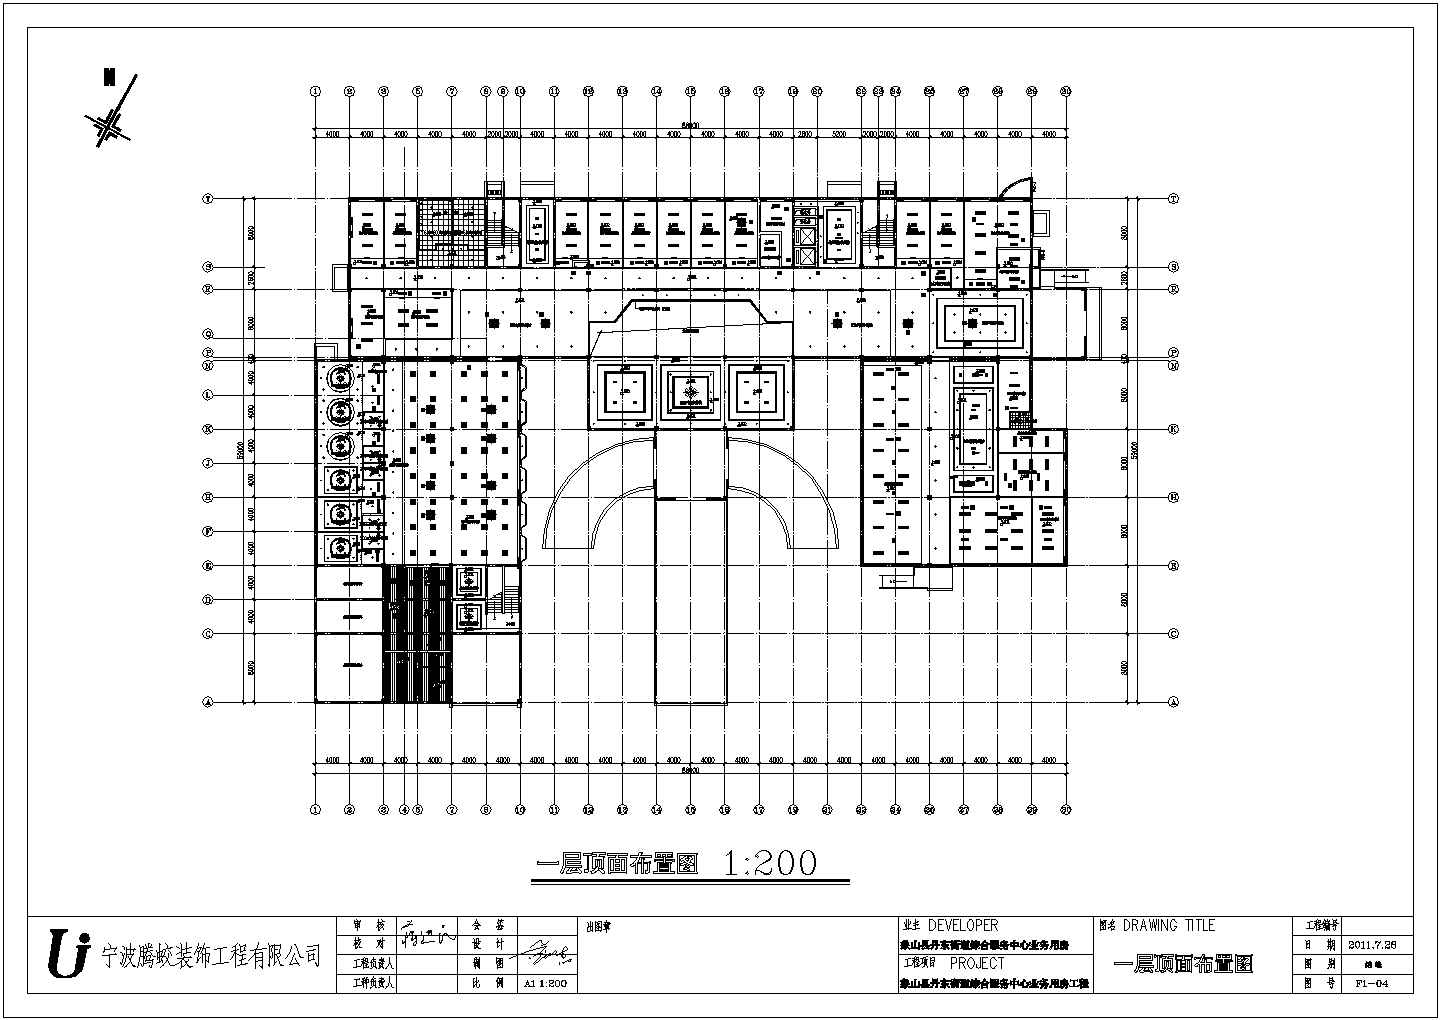 宁波行政服务综合中心一层装修设计竣工图